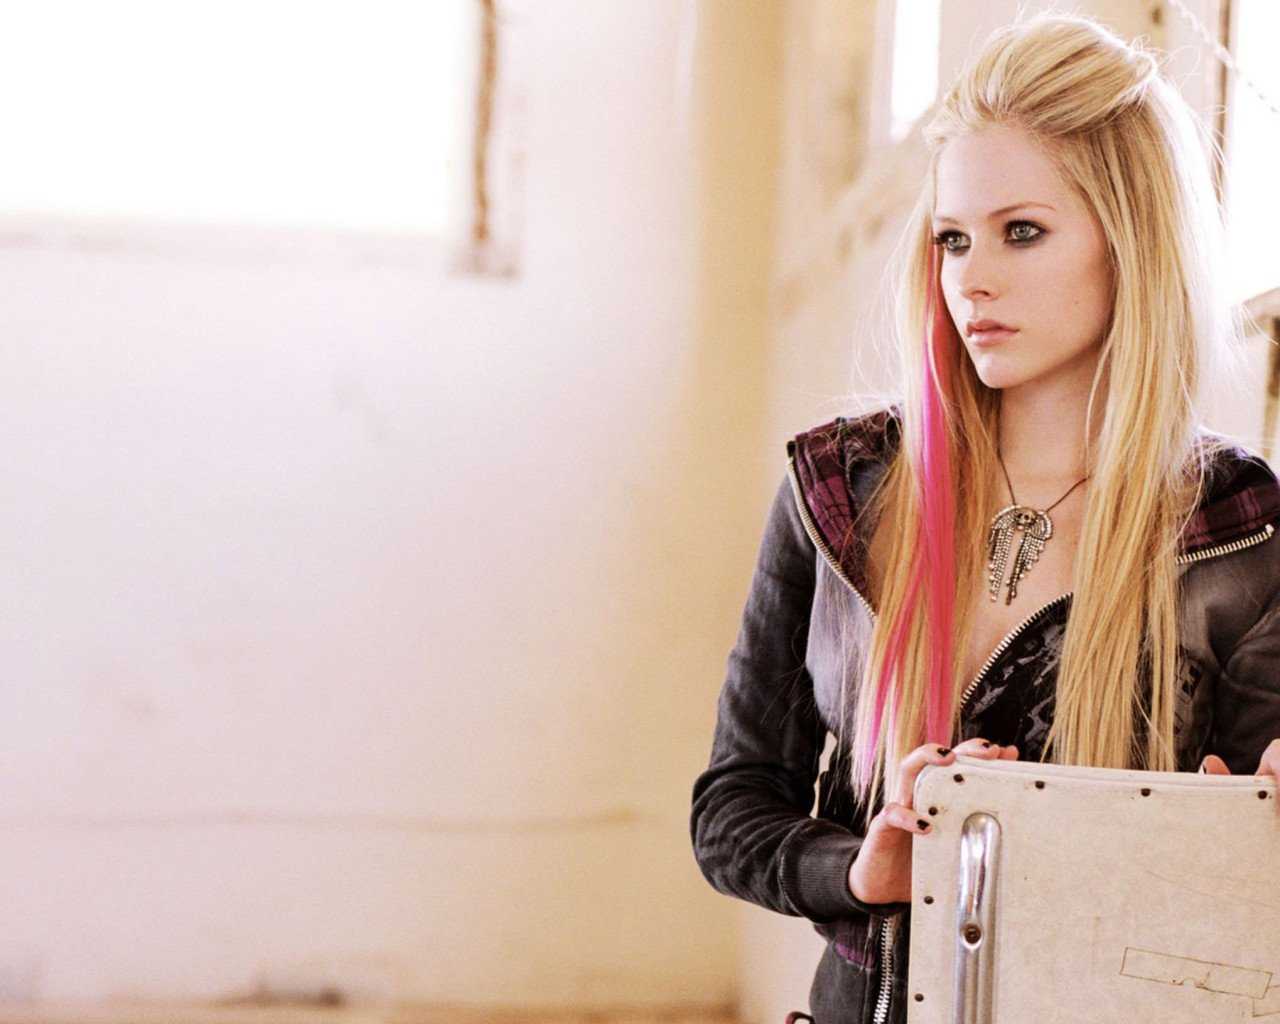 Avril Lavigne, Avril Lavinge, Singer, Music, Girls, , HD Wallpaper & Backgrounds